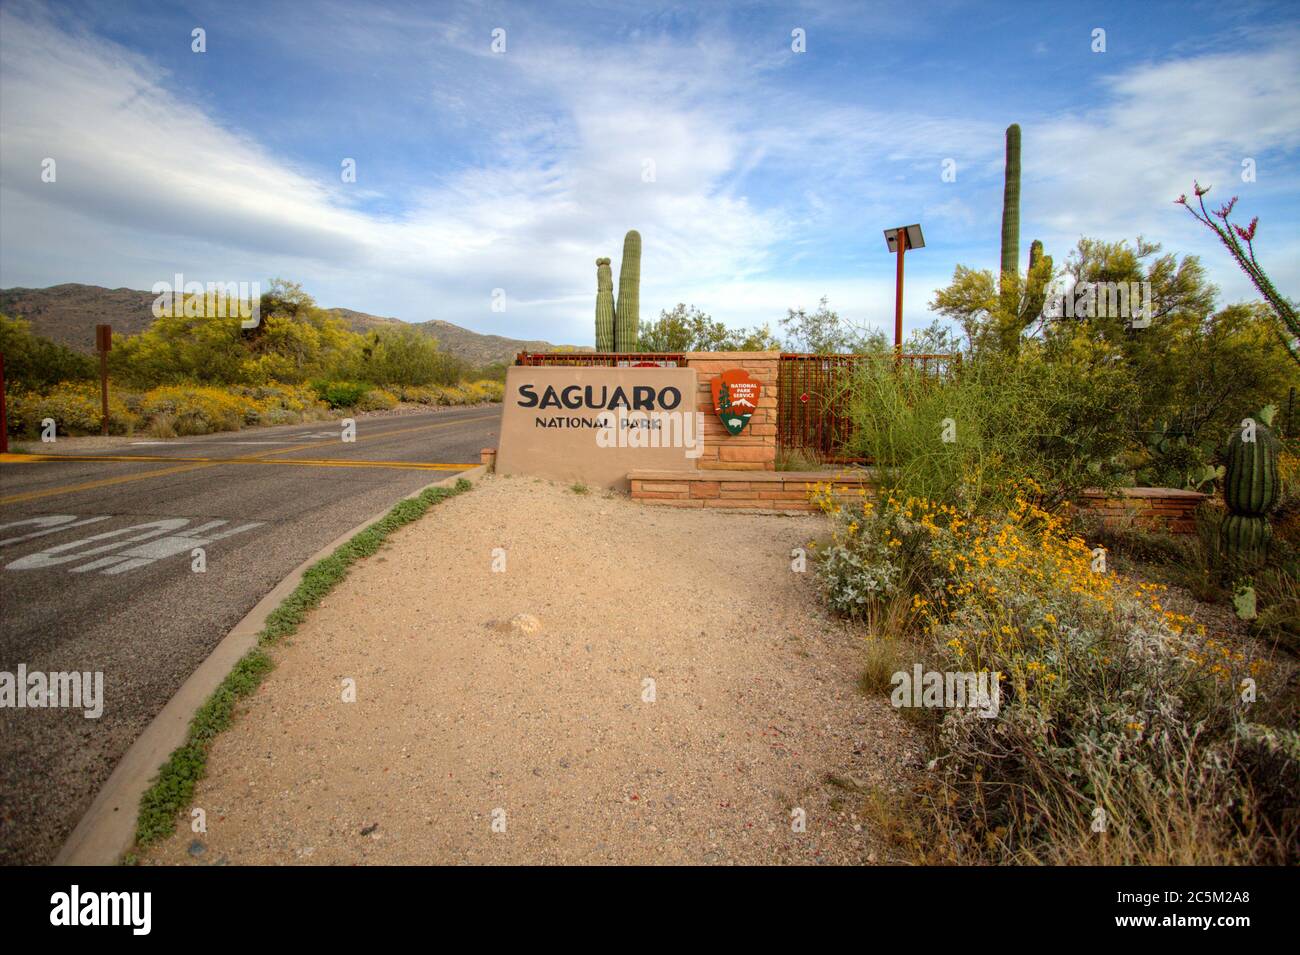 Señal de entrada al Parque Nacional Saguaro en Tucson. El Desierto de Sonora en Arizona es el único lugar en el mundo donde el cactus Saguaro puede crecer. Foto de stock